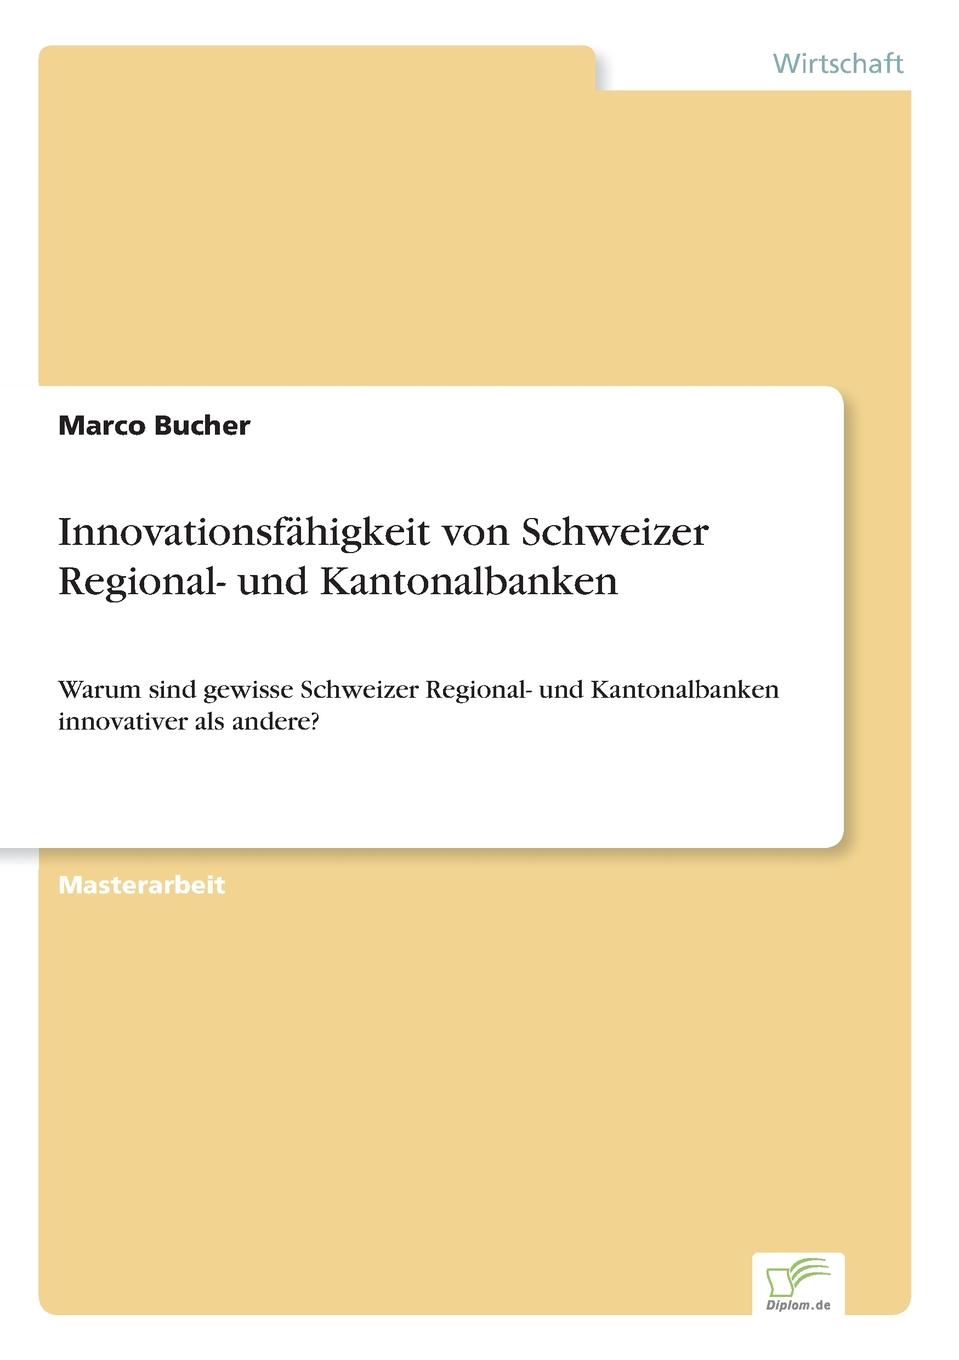 Innovationsfahigkeit von Schweizer Regional- und Kantonalbanken